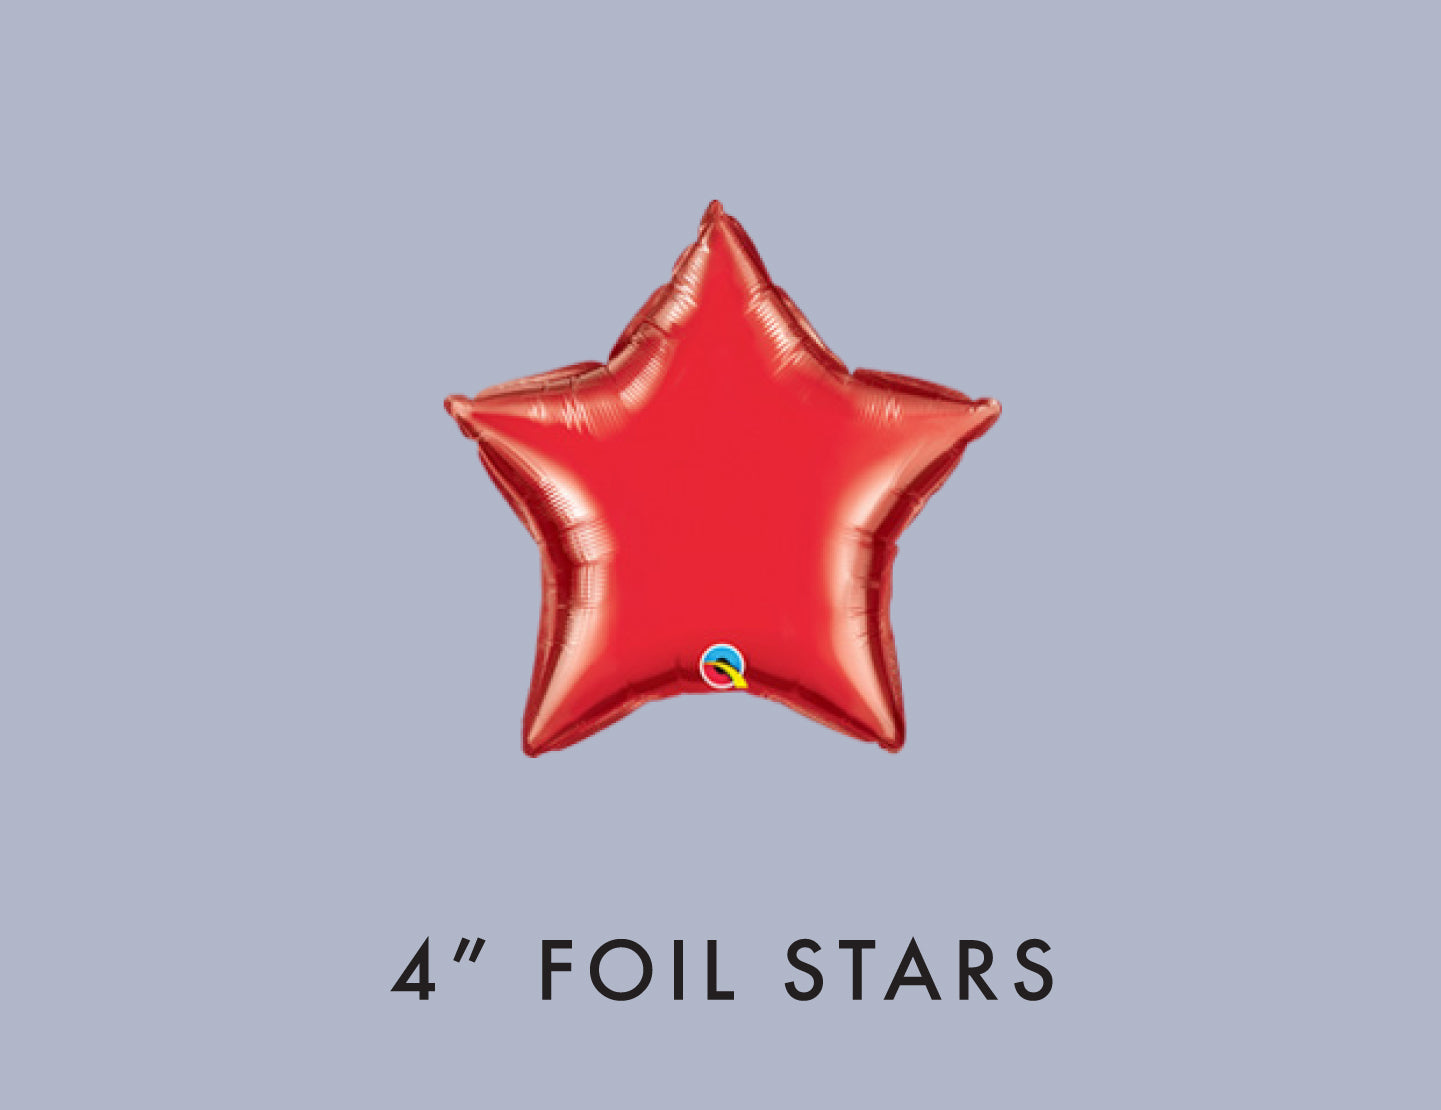 10cm (4") Foil Stars